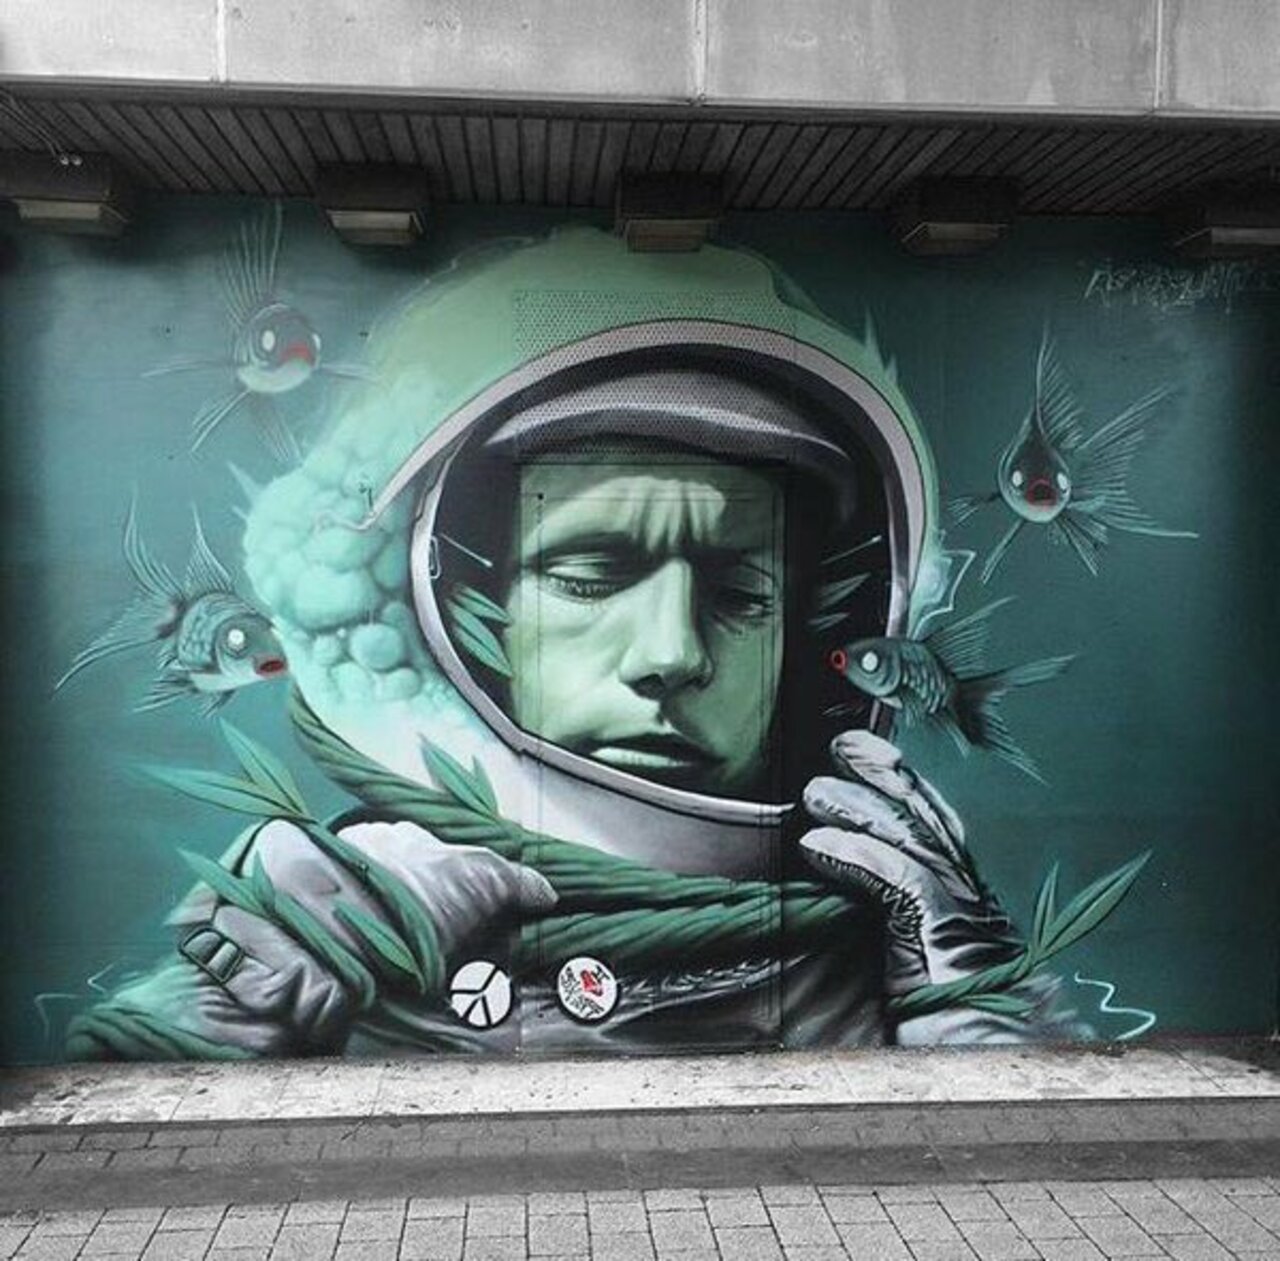 #mural by Rocket #Sheffield #uk #art #streetart #grafitti #urbanart https://t.co/2Y8Dk6zbAW